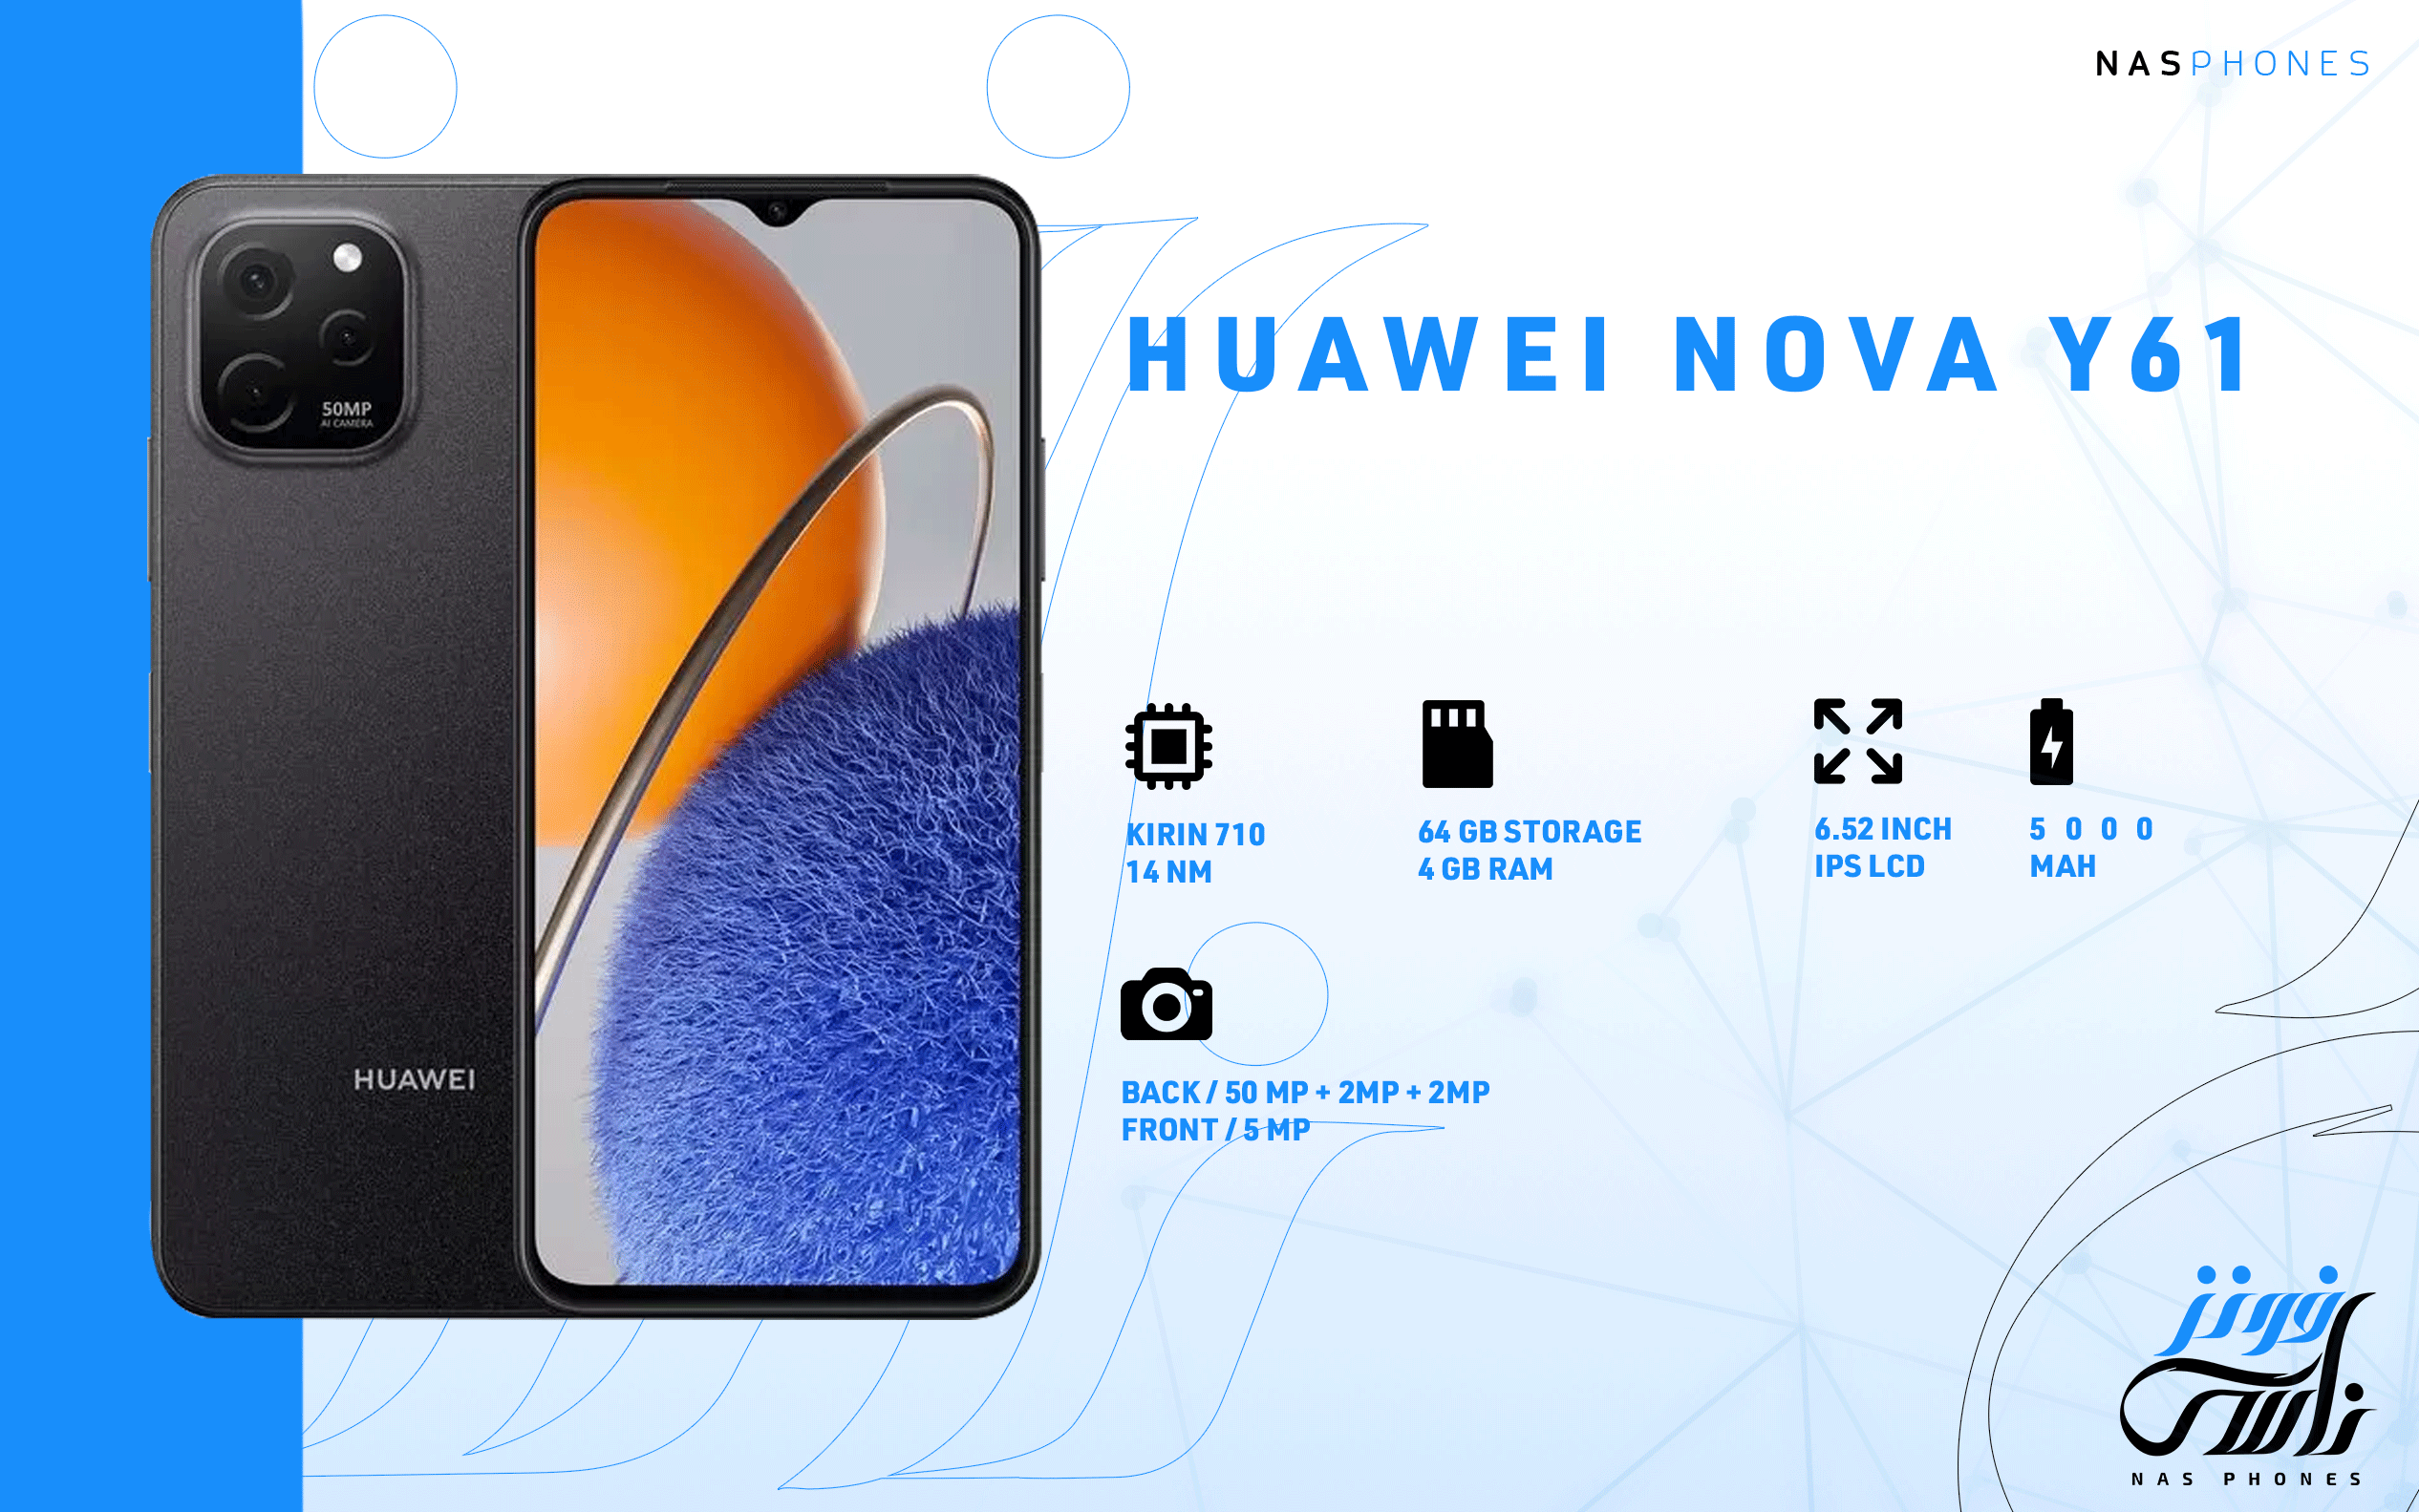 سعر ومواصفات هاتف Huawei nova Y61